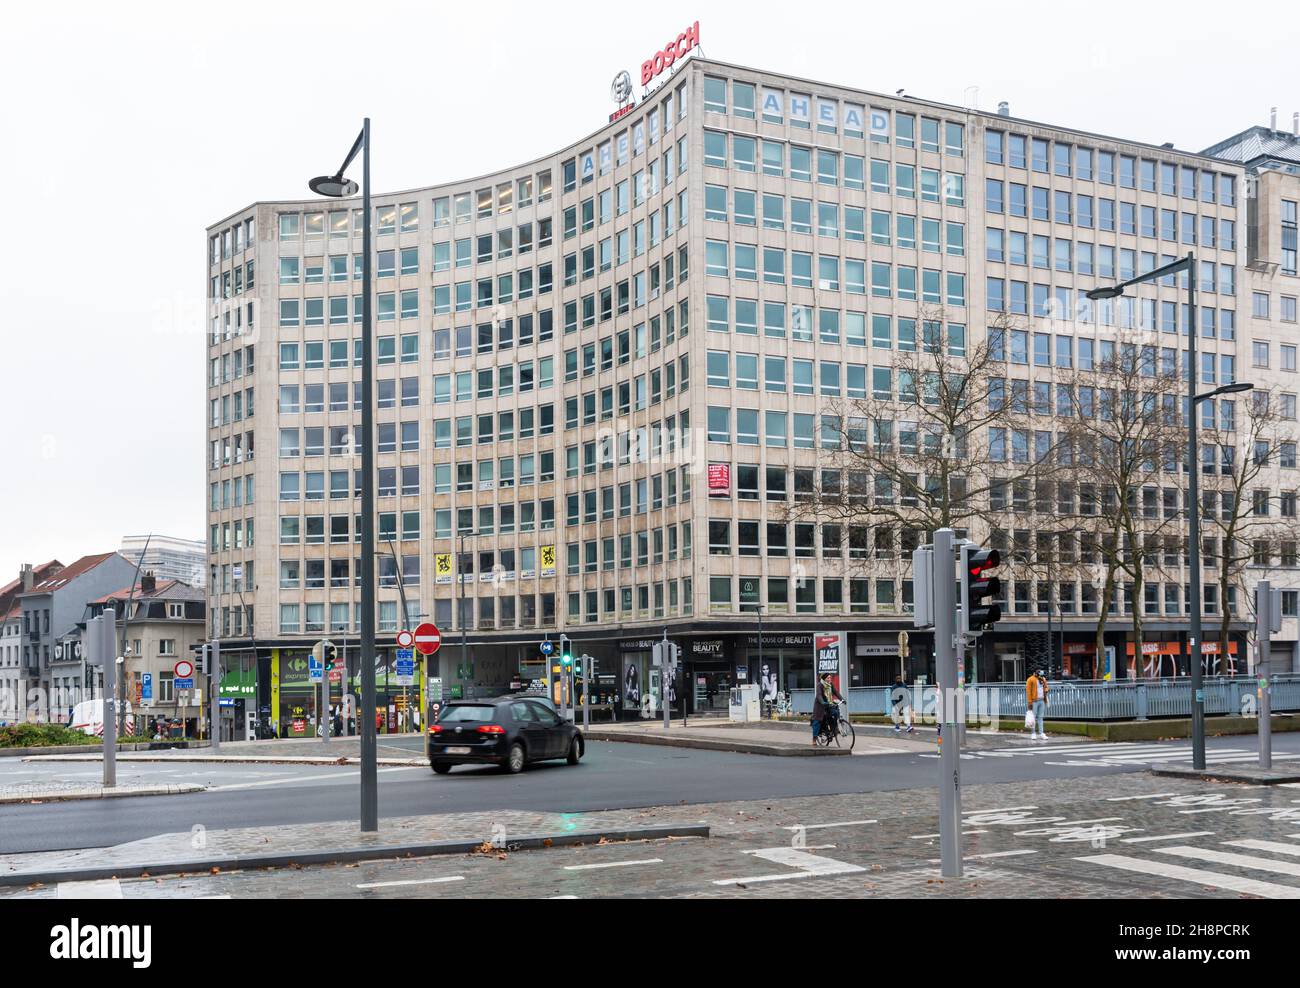 Saint-Josse, région de Bruxelles-capitale, Belgique- 11 26 2021: Place Madou avec la construction du parti politique de droite Vlaams Belang Banque D'Images